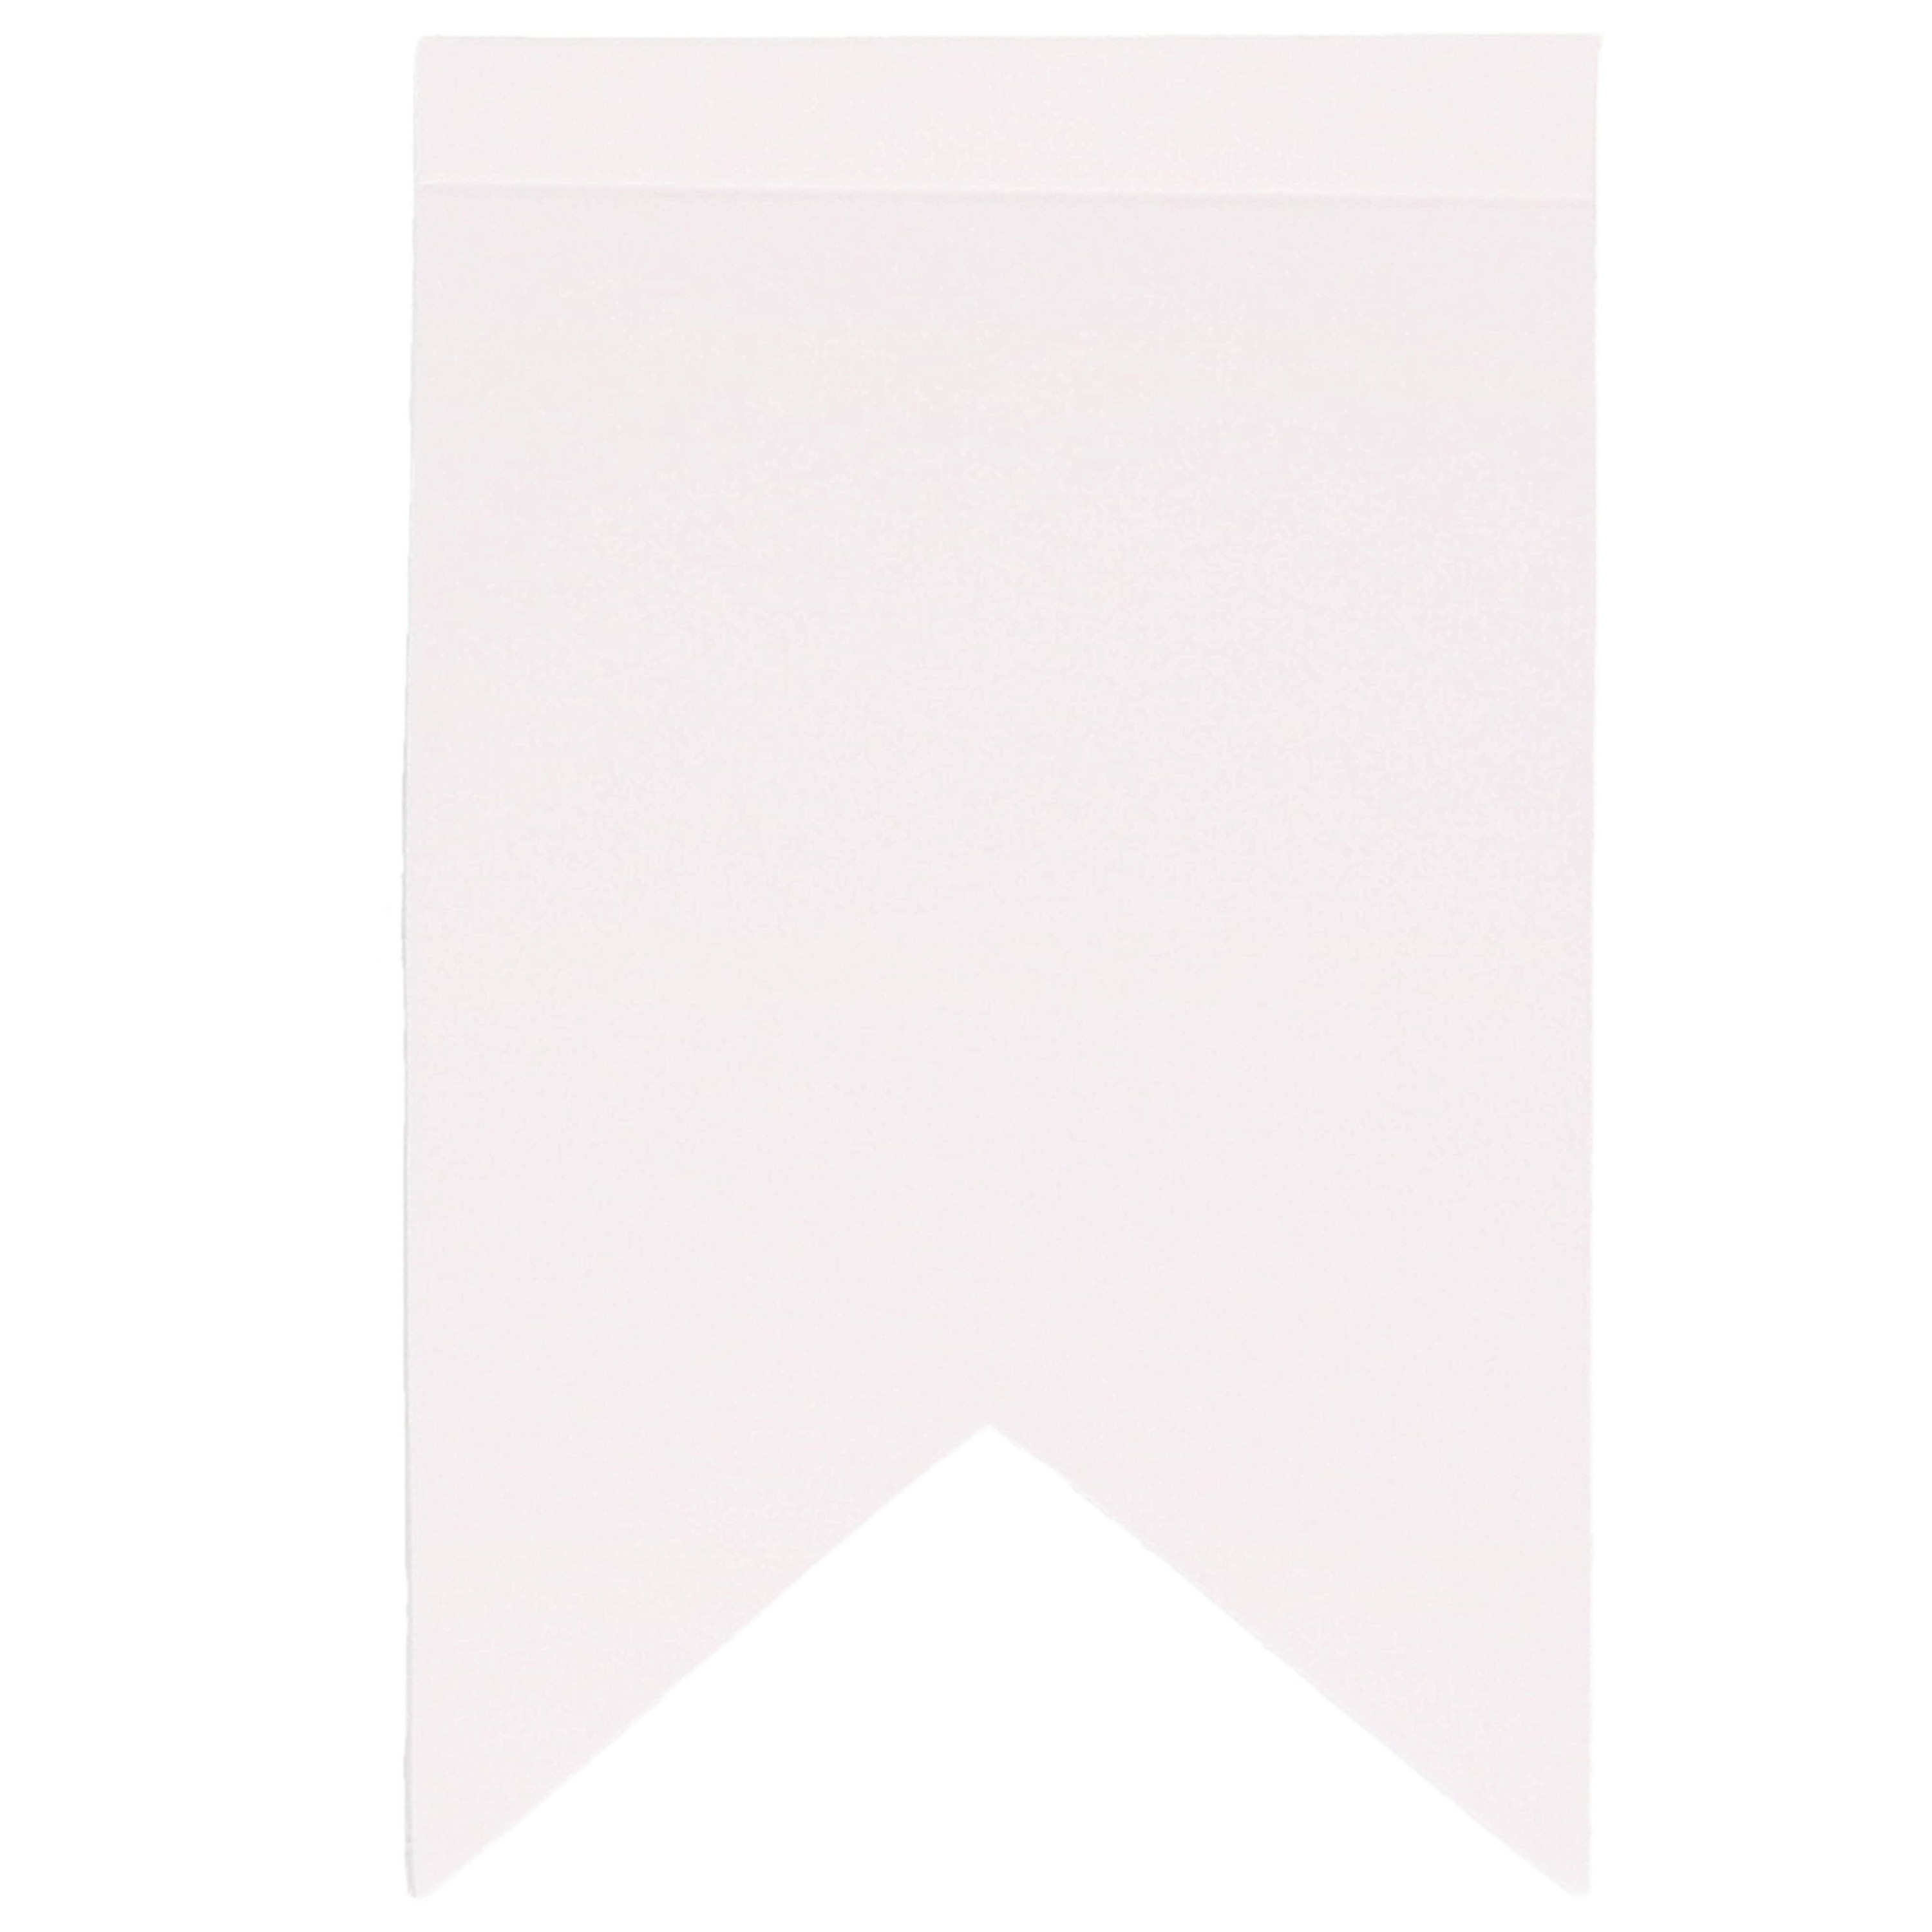 Blanco zigzag vlaggetjes 12 stuks voor een vlaggenlijn